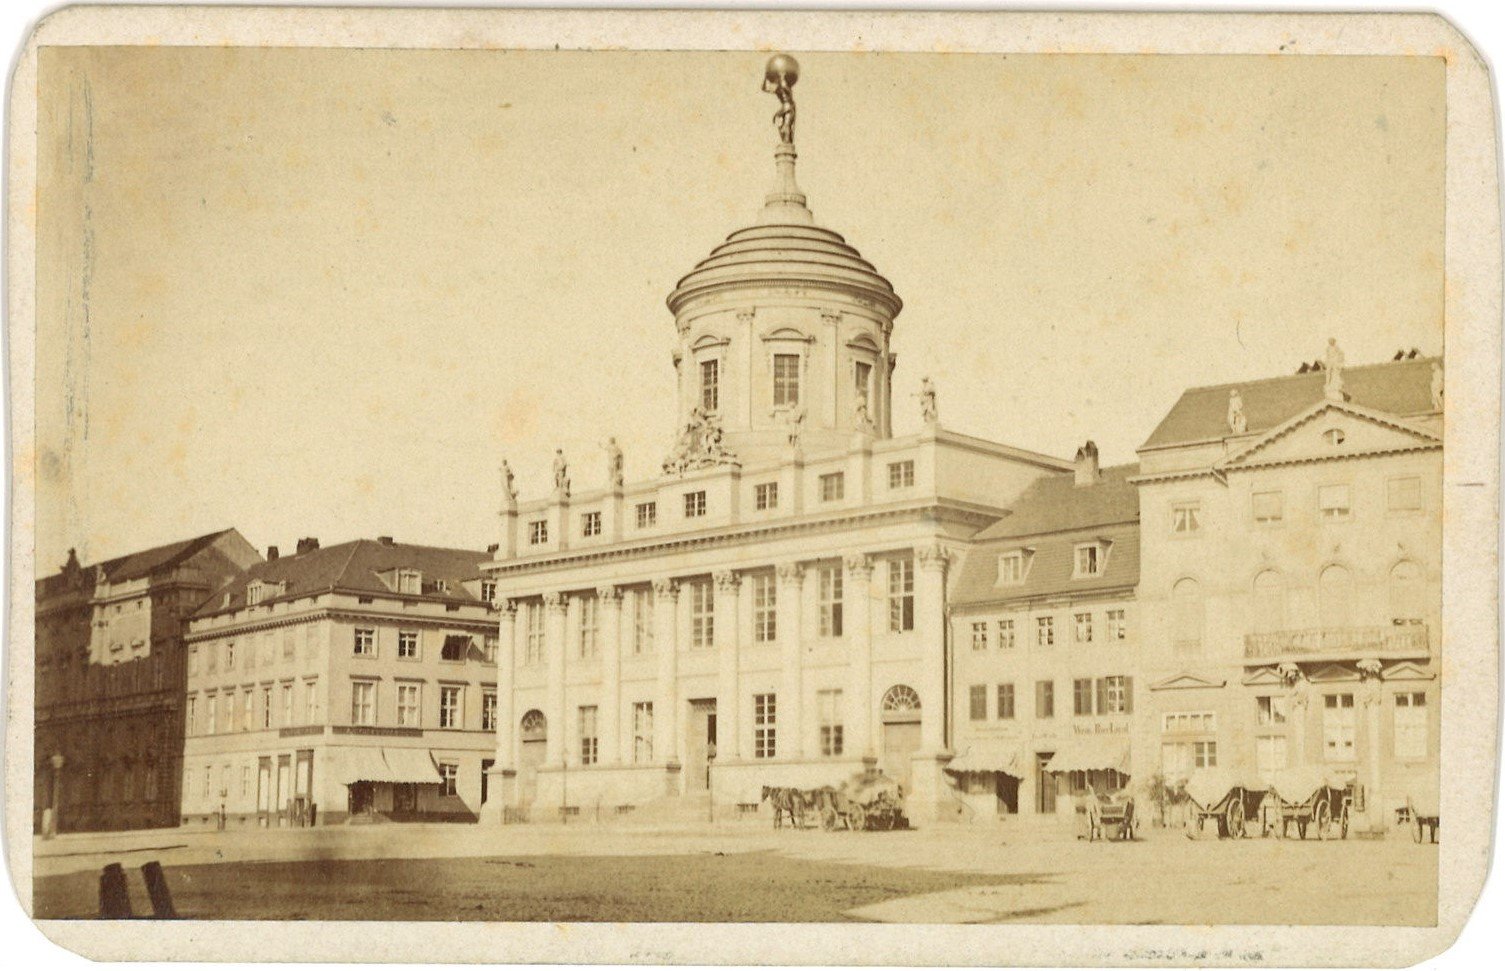 Potsdam: Altes Rathaus und Umgebung (Landesgeschichtliche Vereinigung für die Mark Brandenburg e.V., Archiv CC BY)